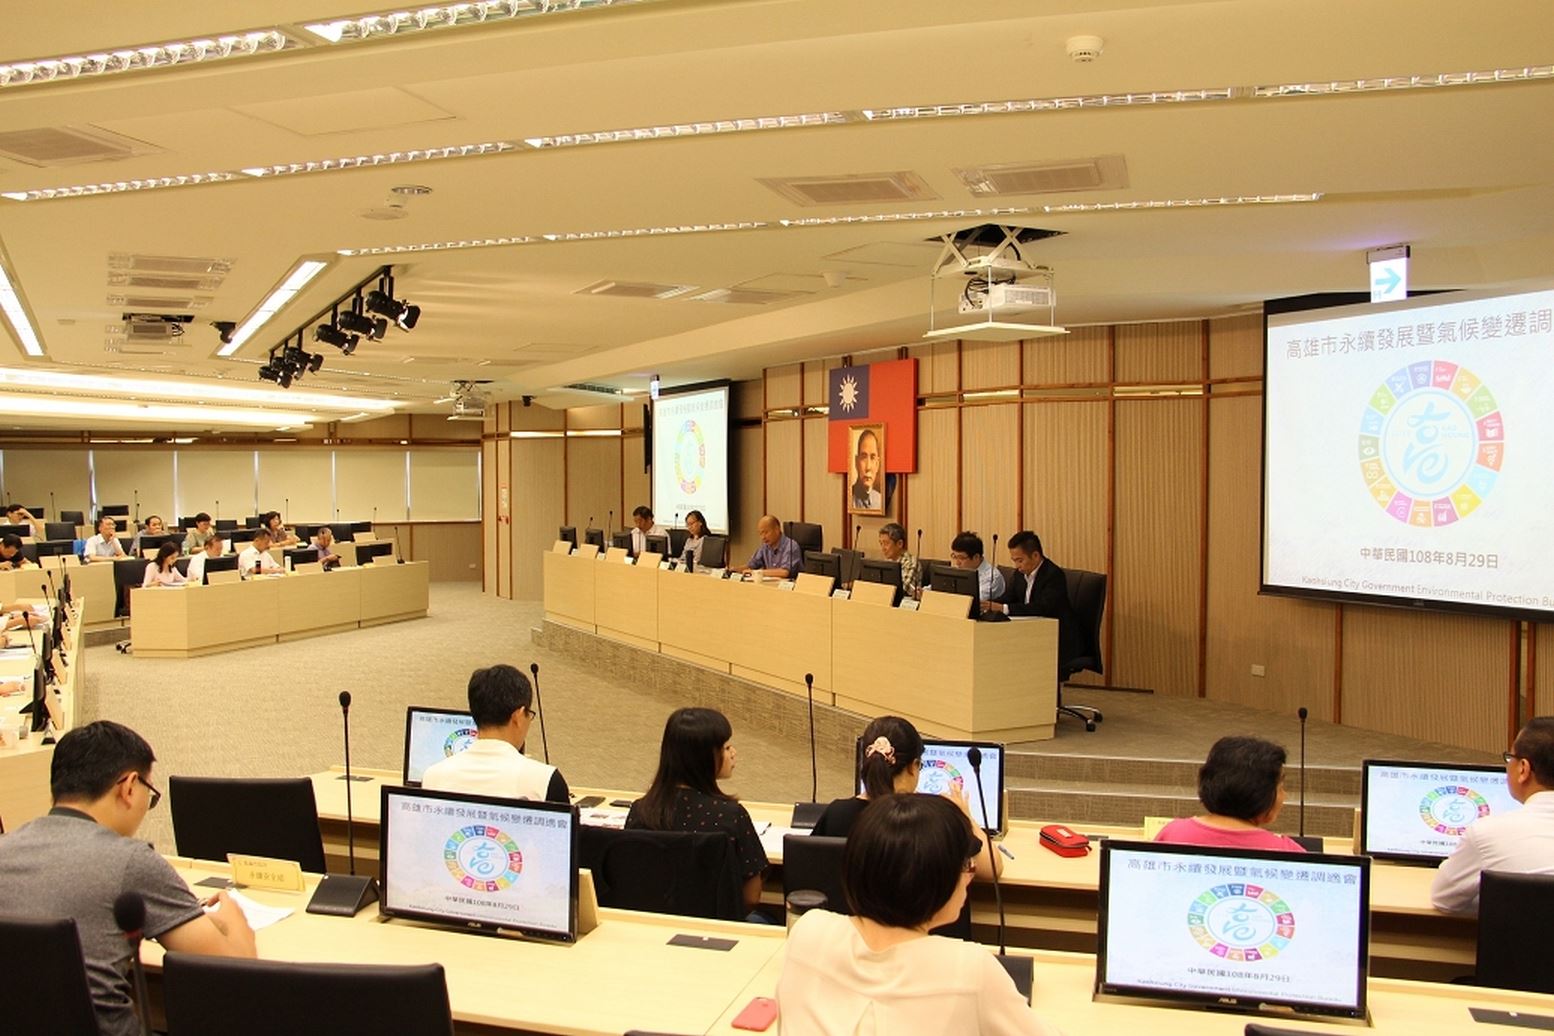 邁向低碳韌性城市  韓國瑜主持永續發展會議